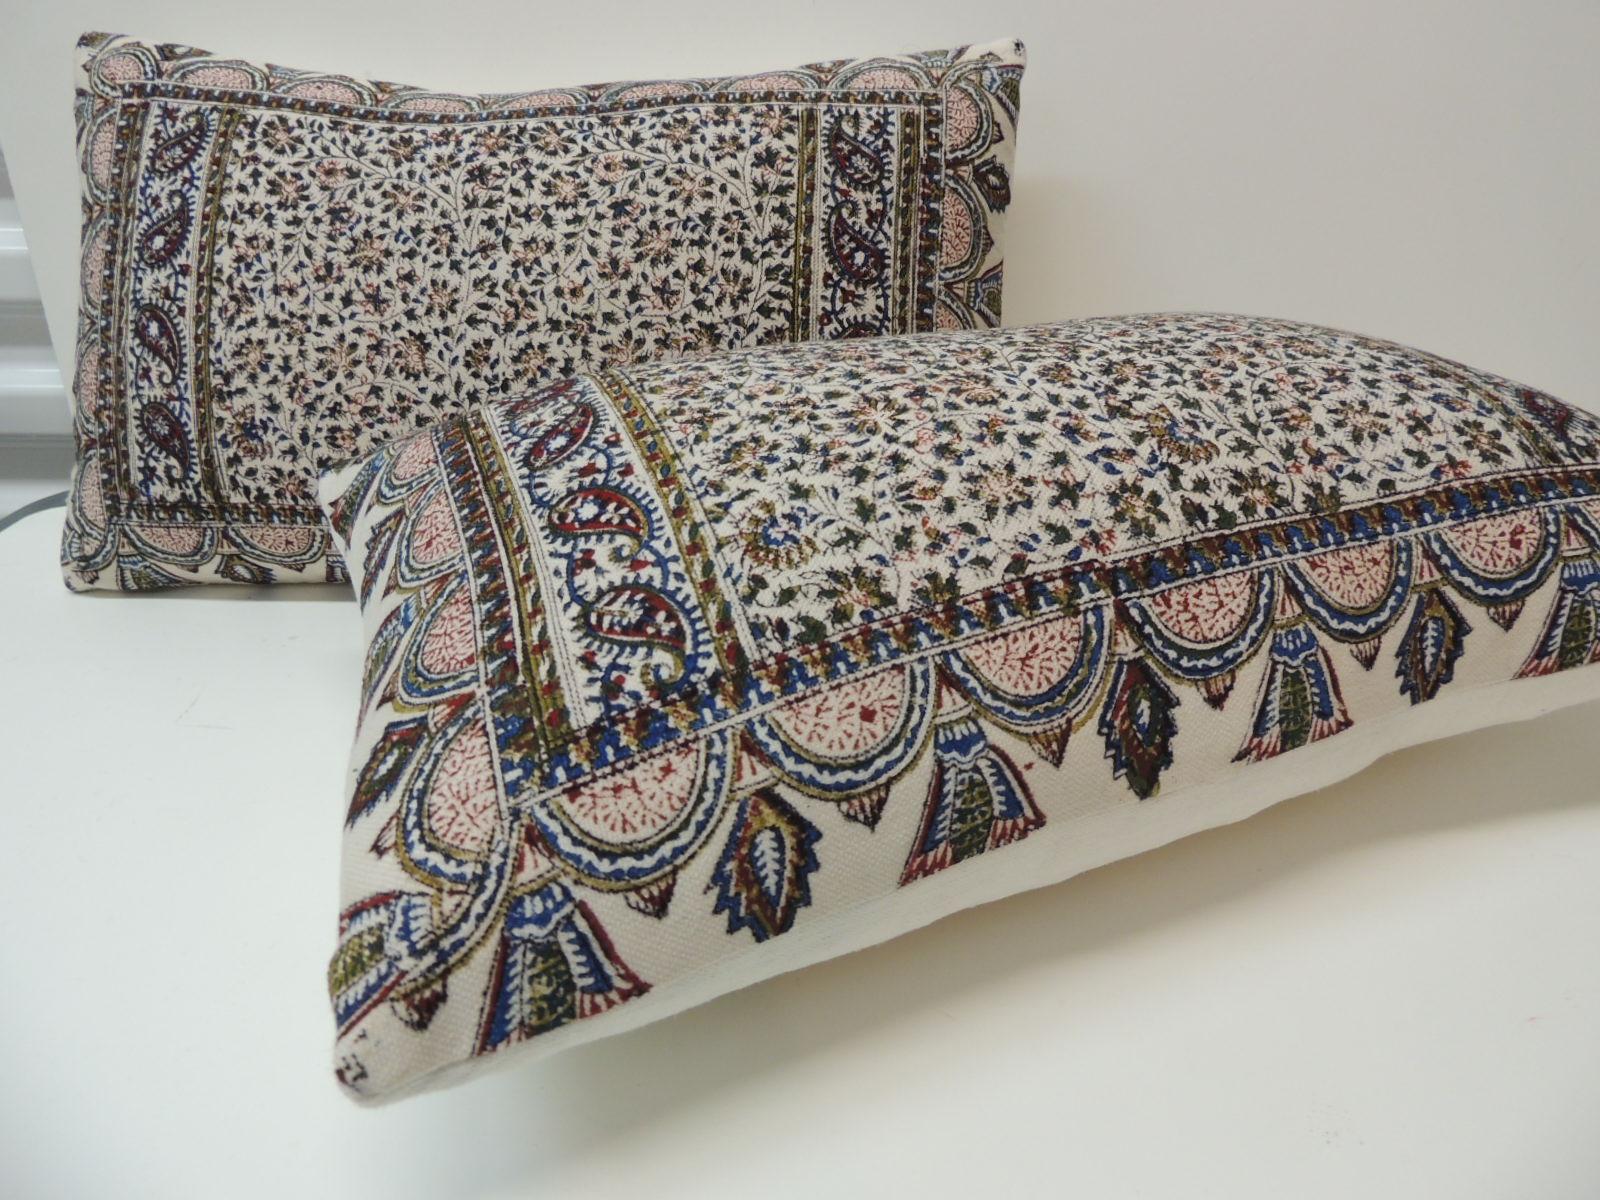 Armenian Pair of Vintage Hand-Blocked Kalamkari Lumbar Decorative Pillows